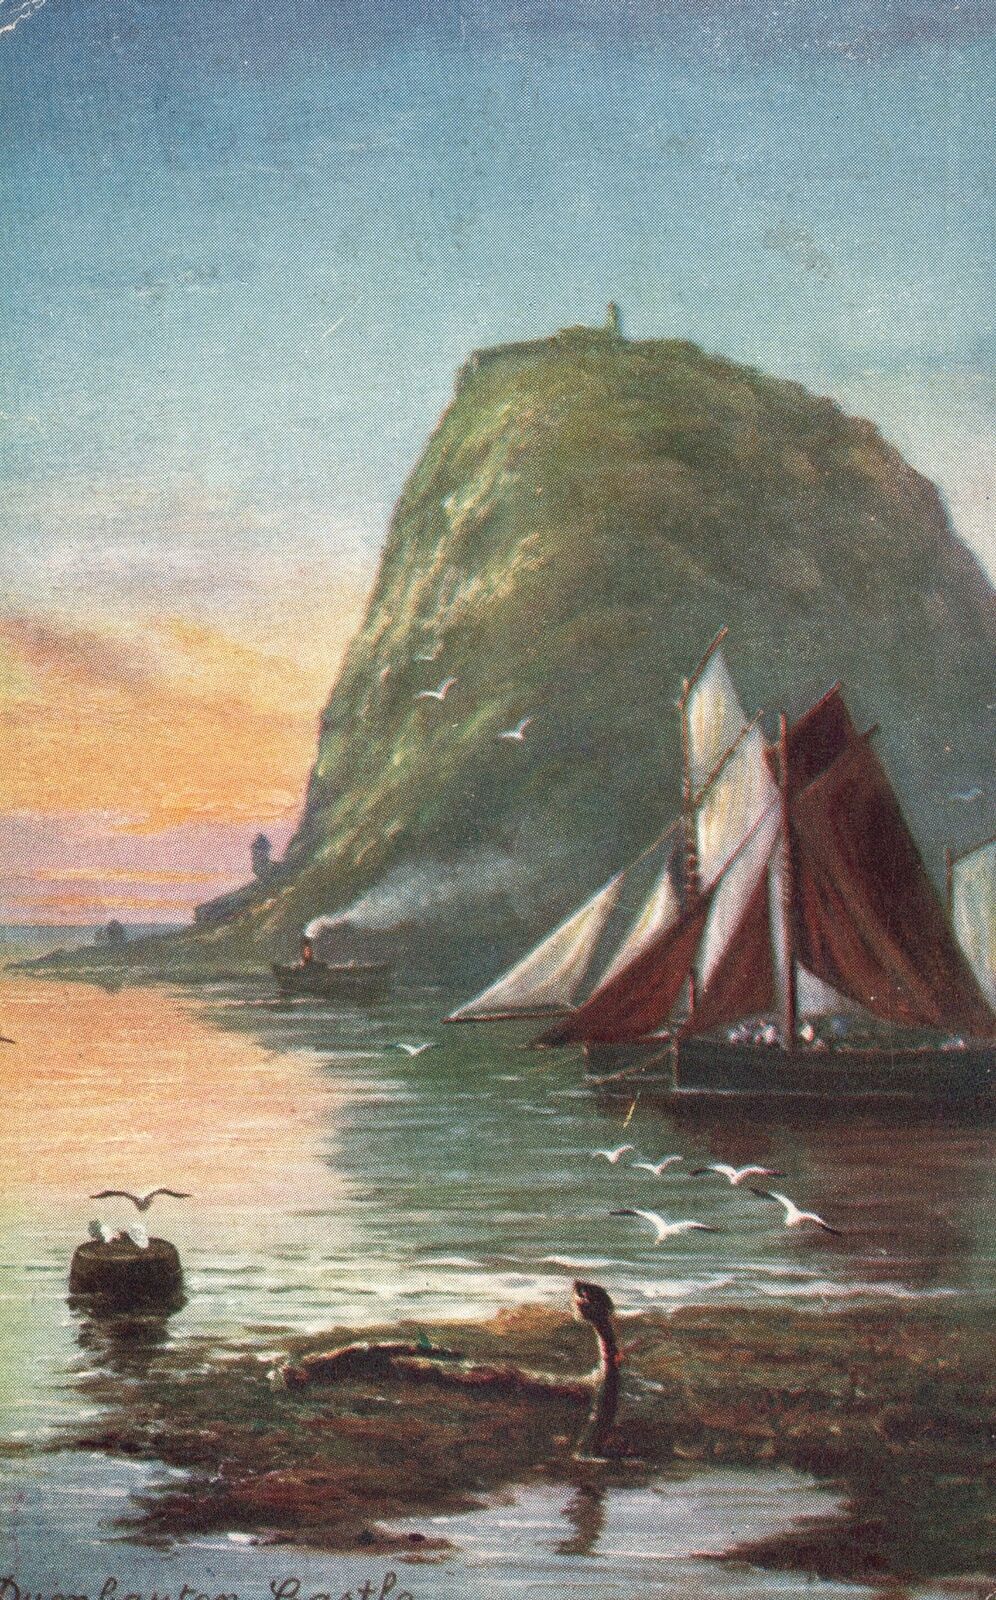 Vintage Postcard Dumbarton Castle Stupendous Rock on Shore Scotland Painting Art